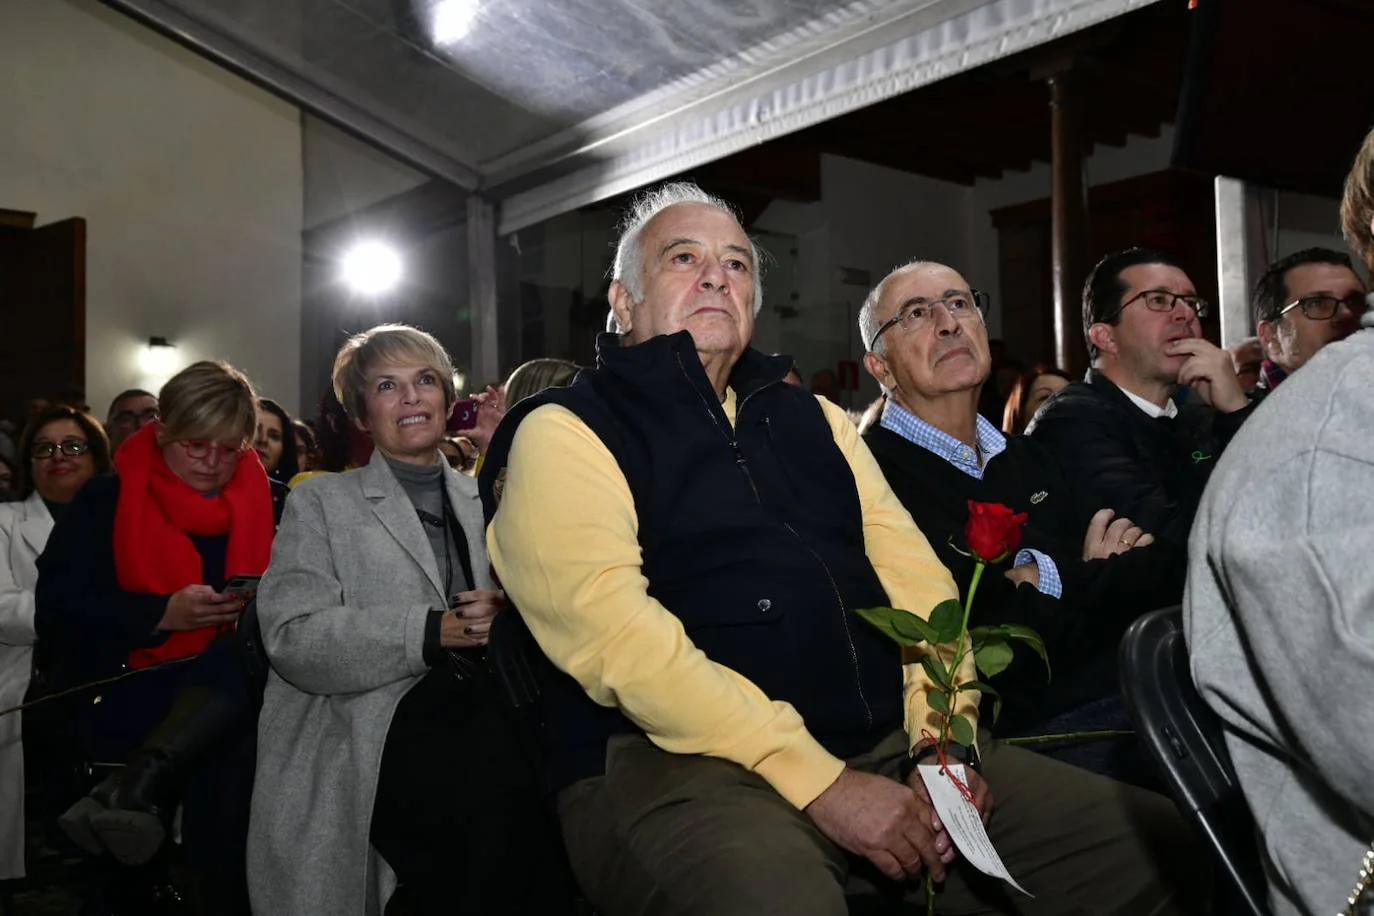 Fotos: El PSOE presenta a Alejandro Ramos como candidato a la alcaldía de Telde